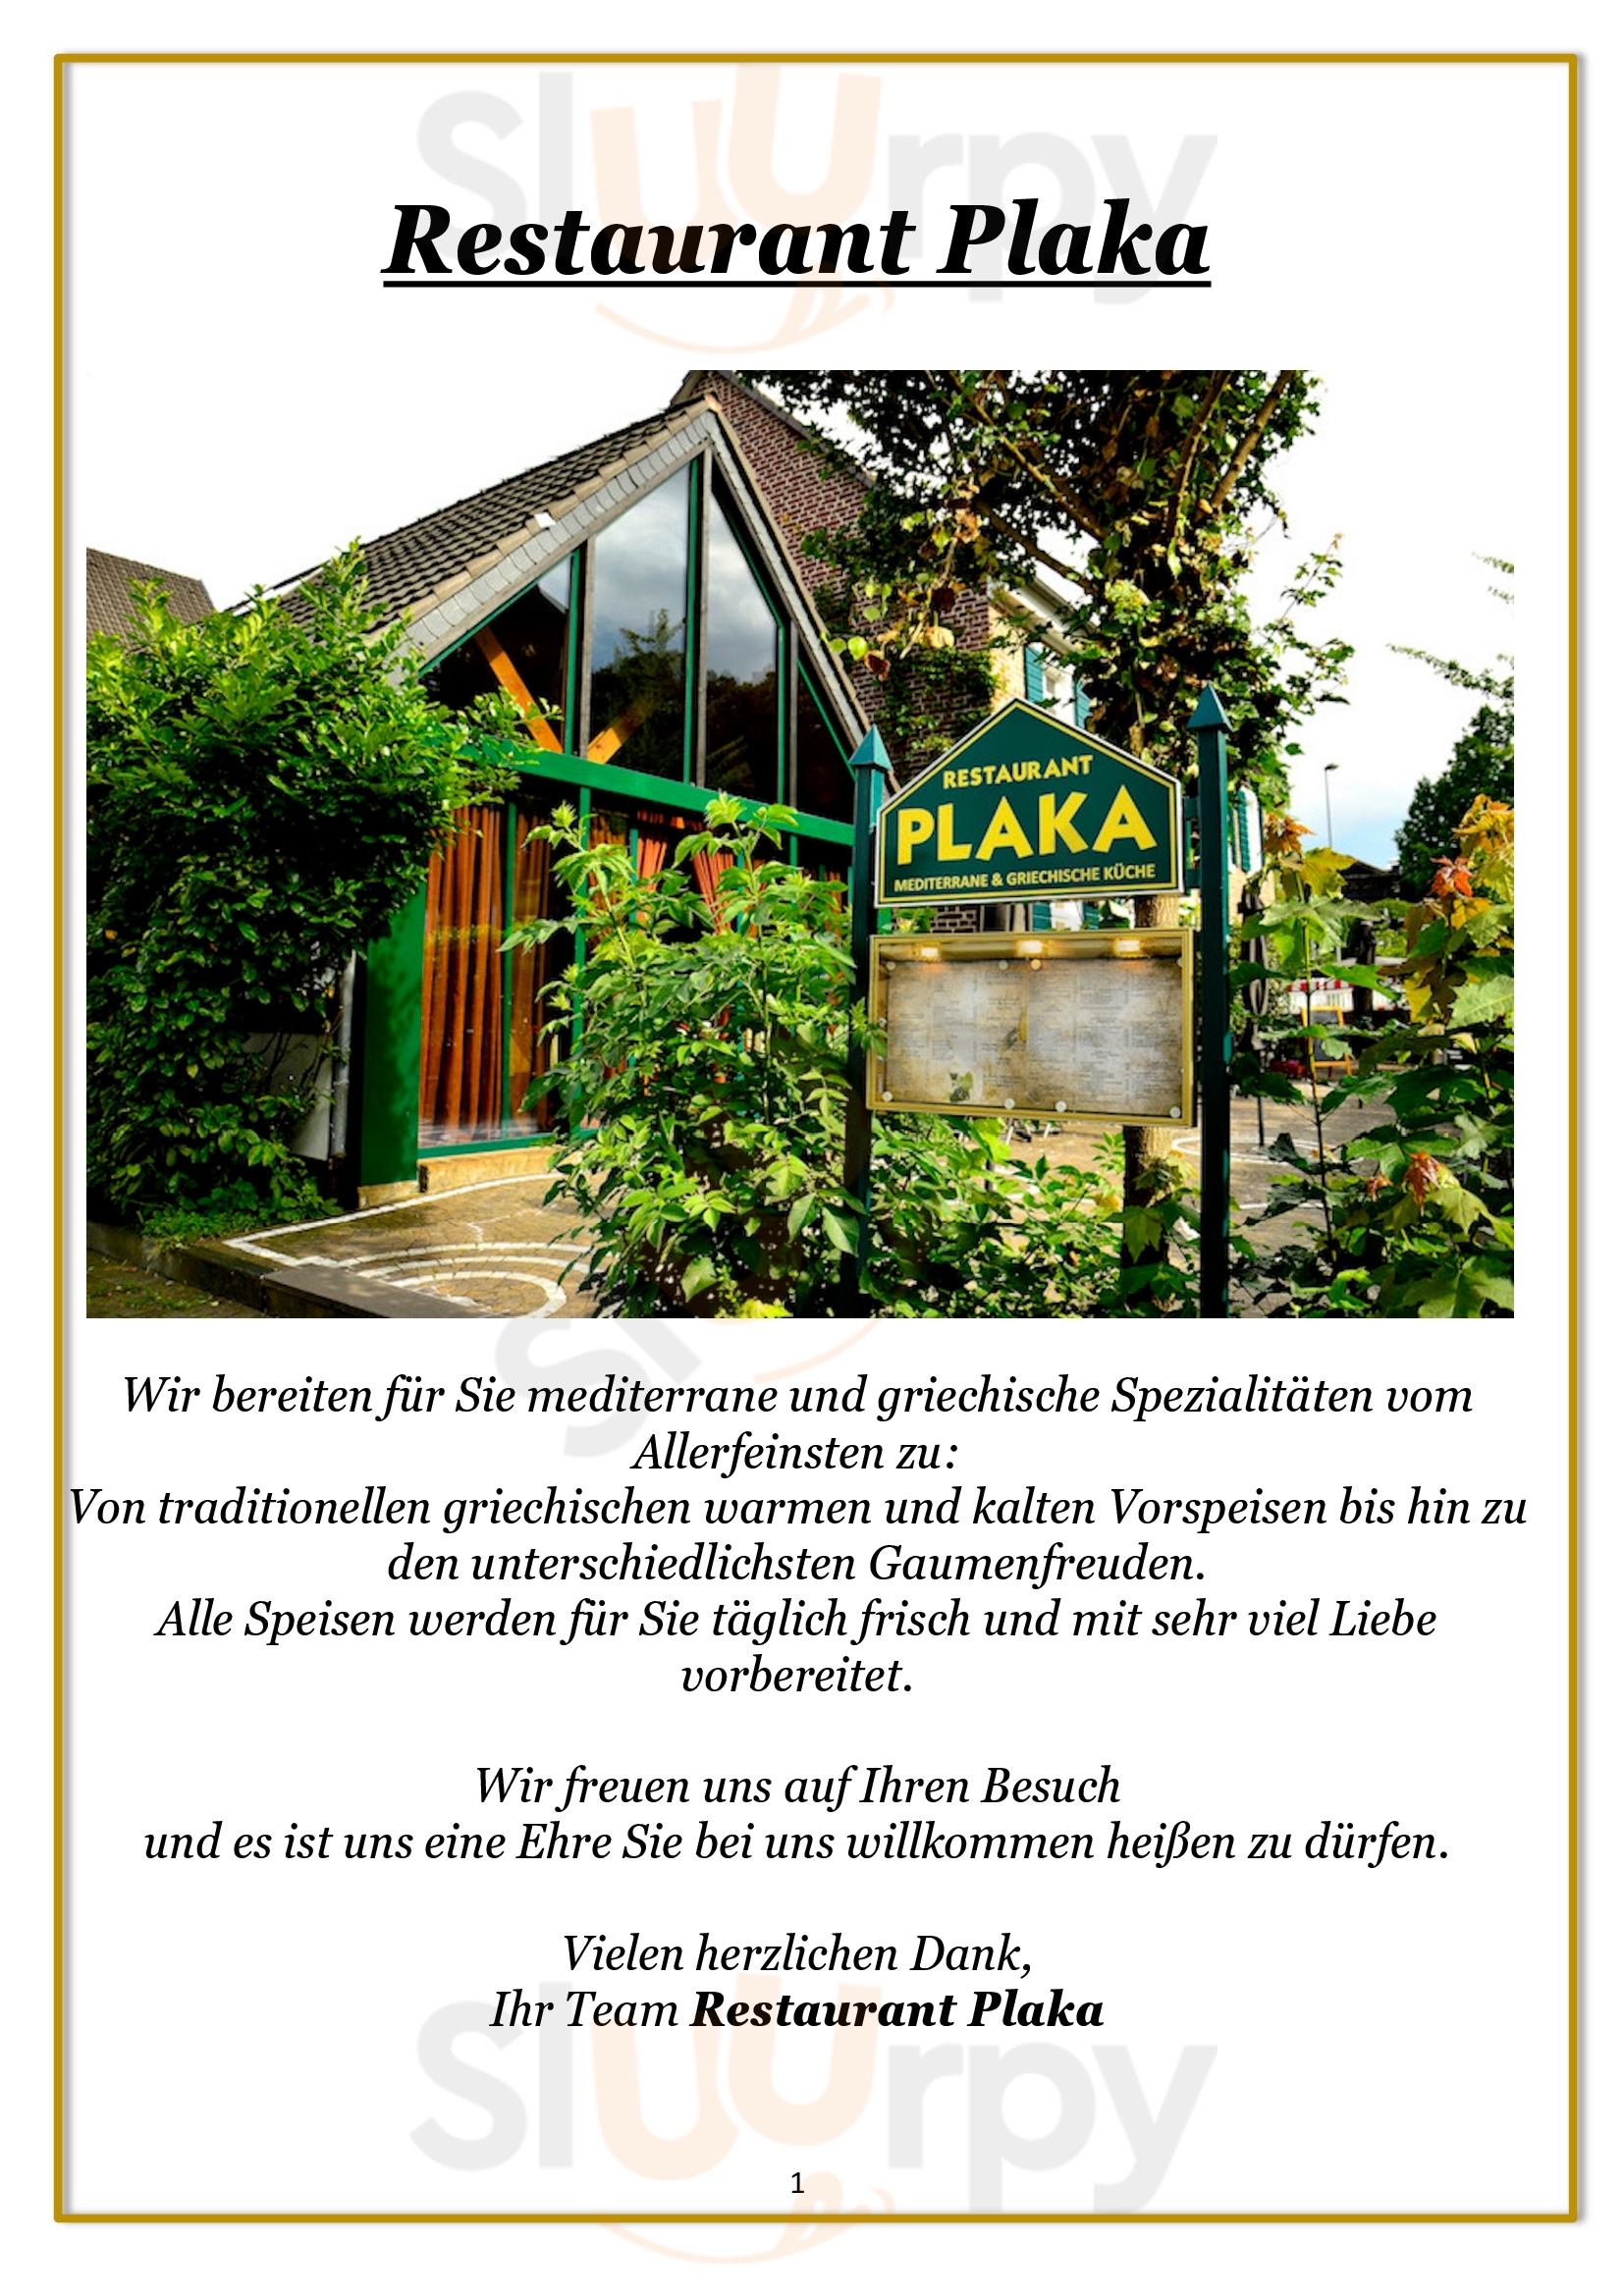 Restaurant Plaka Leverkusen Menu - 1